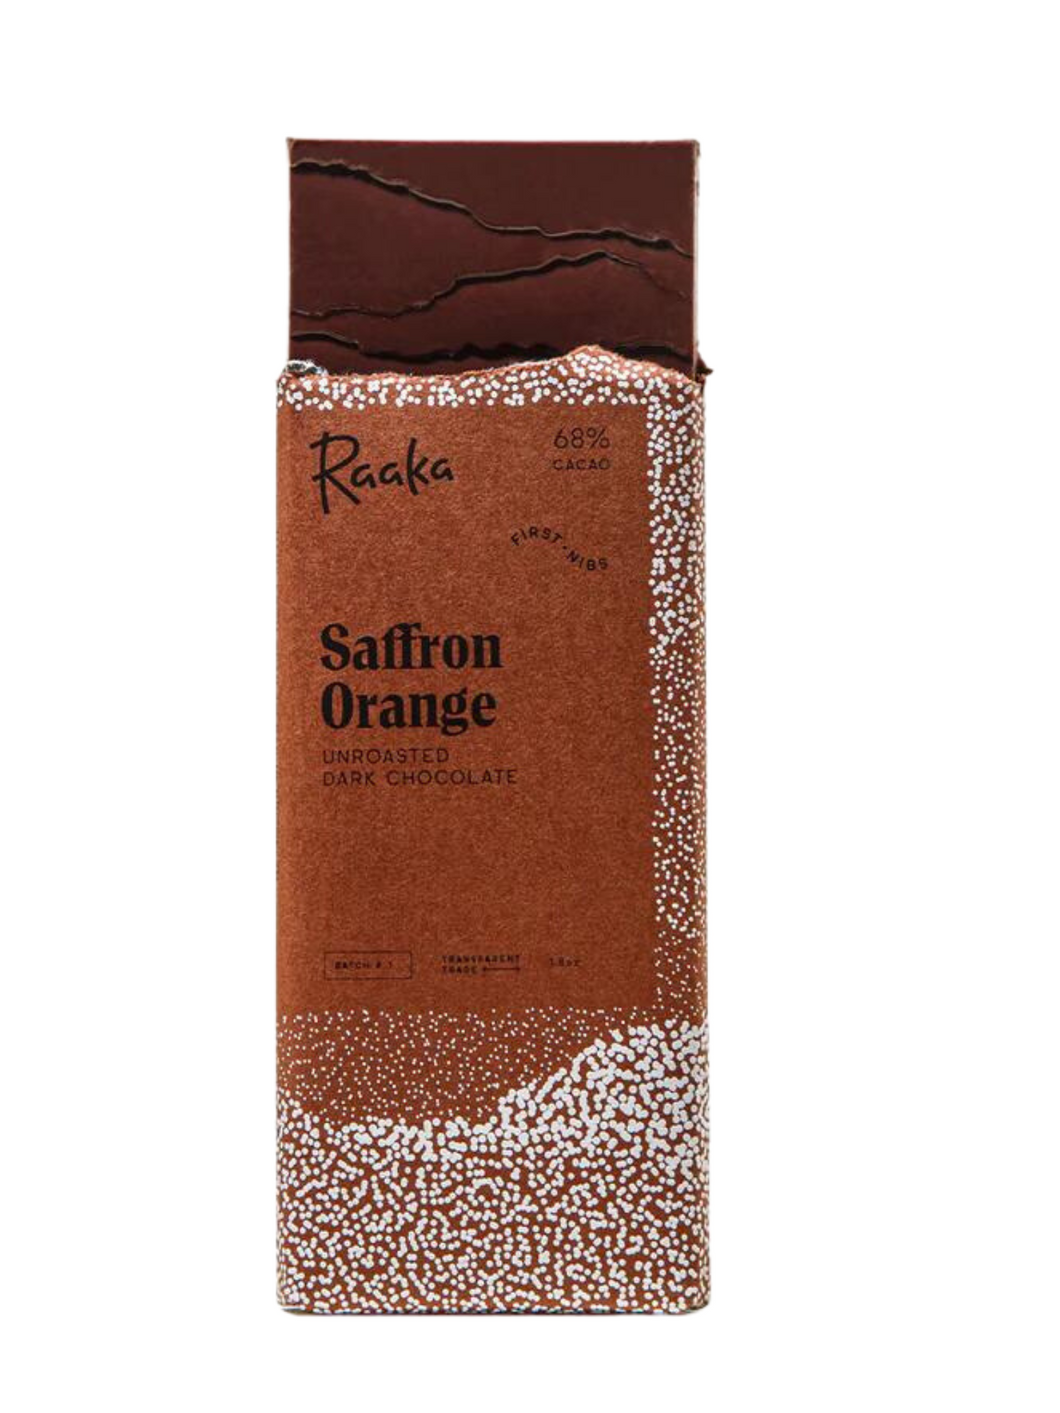 68% Saffron Orange Unroasted Dark Chocolate Bar